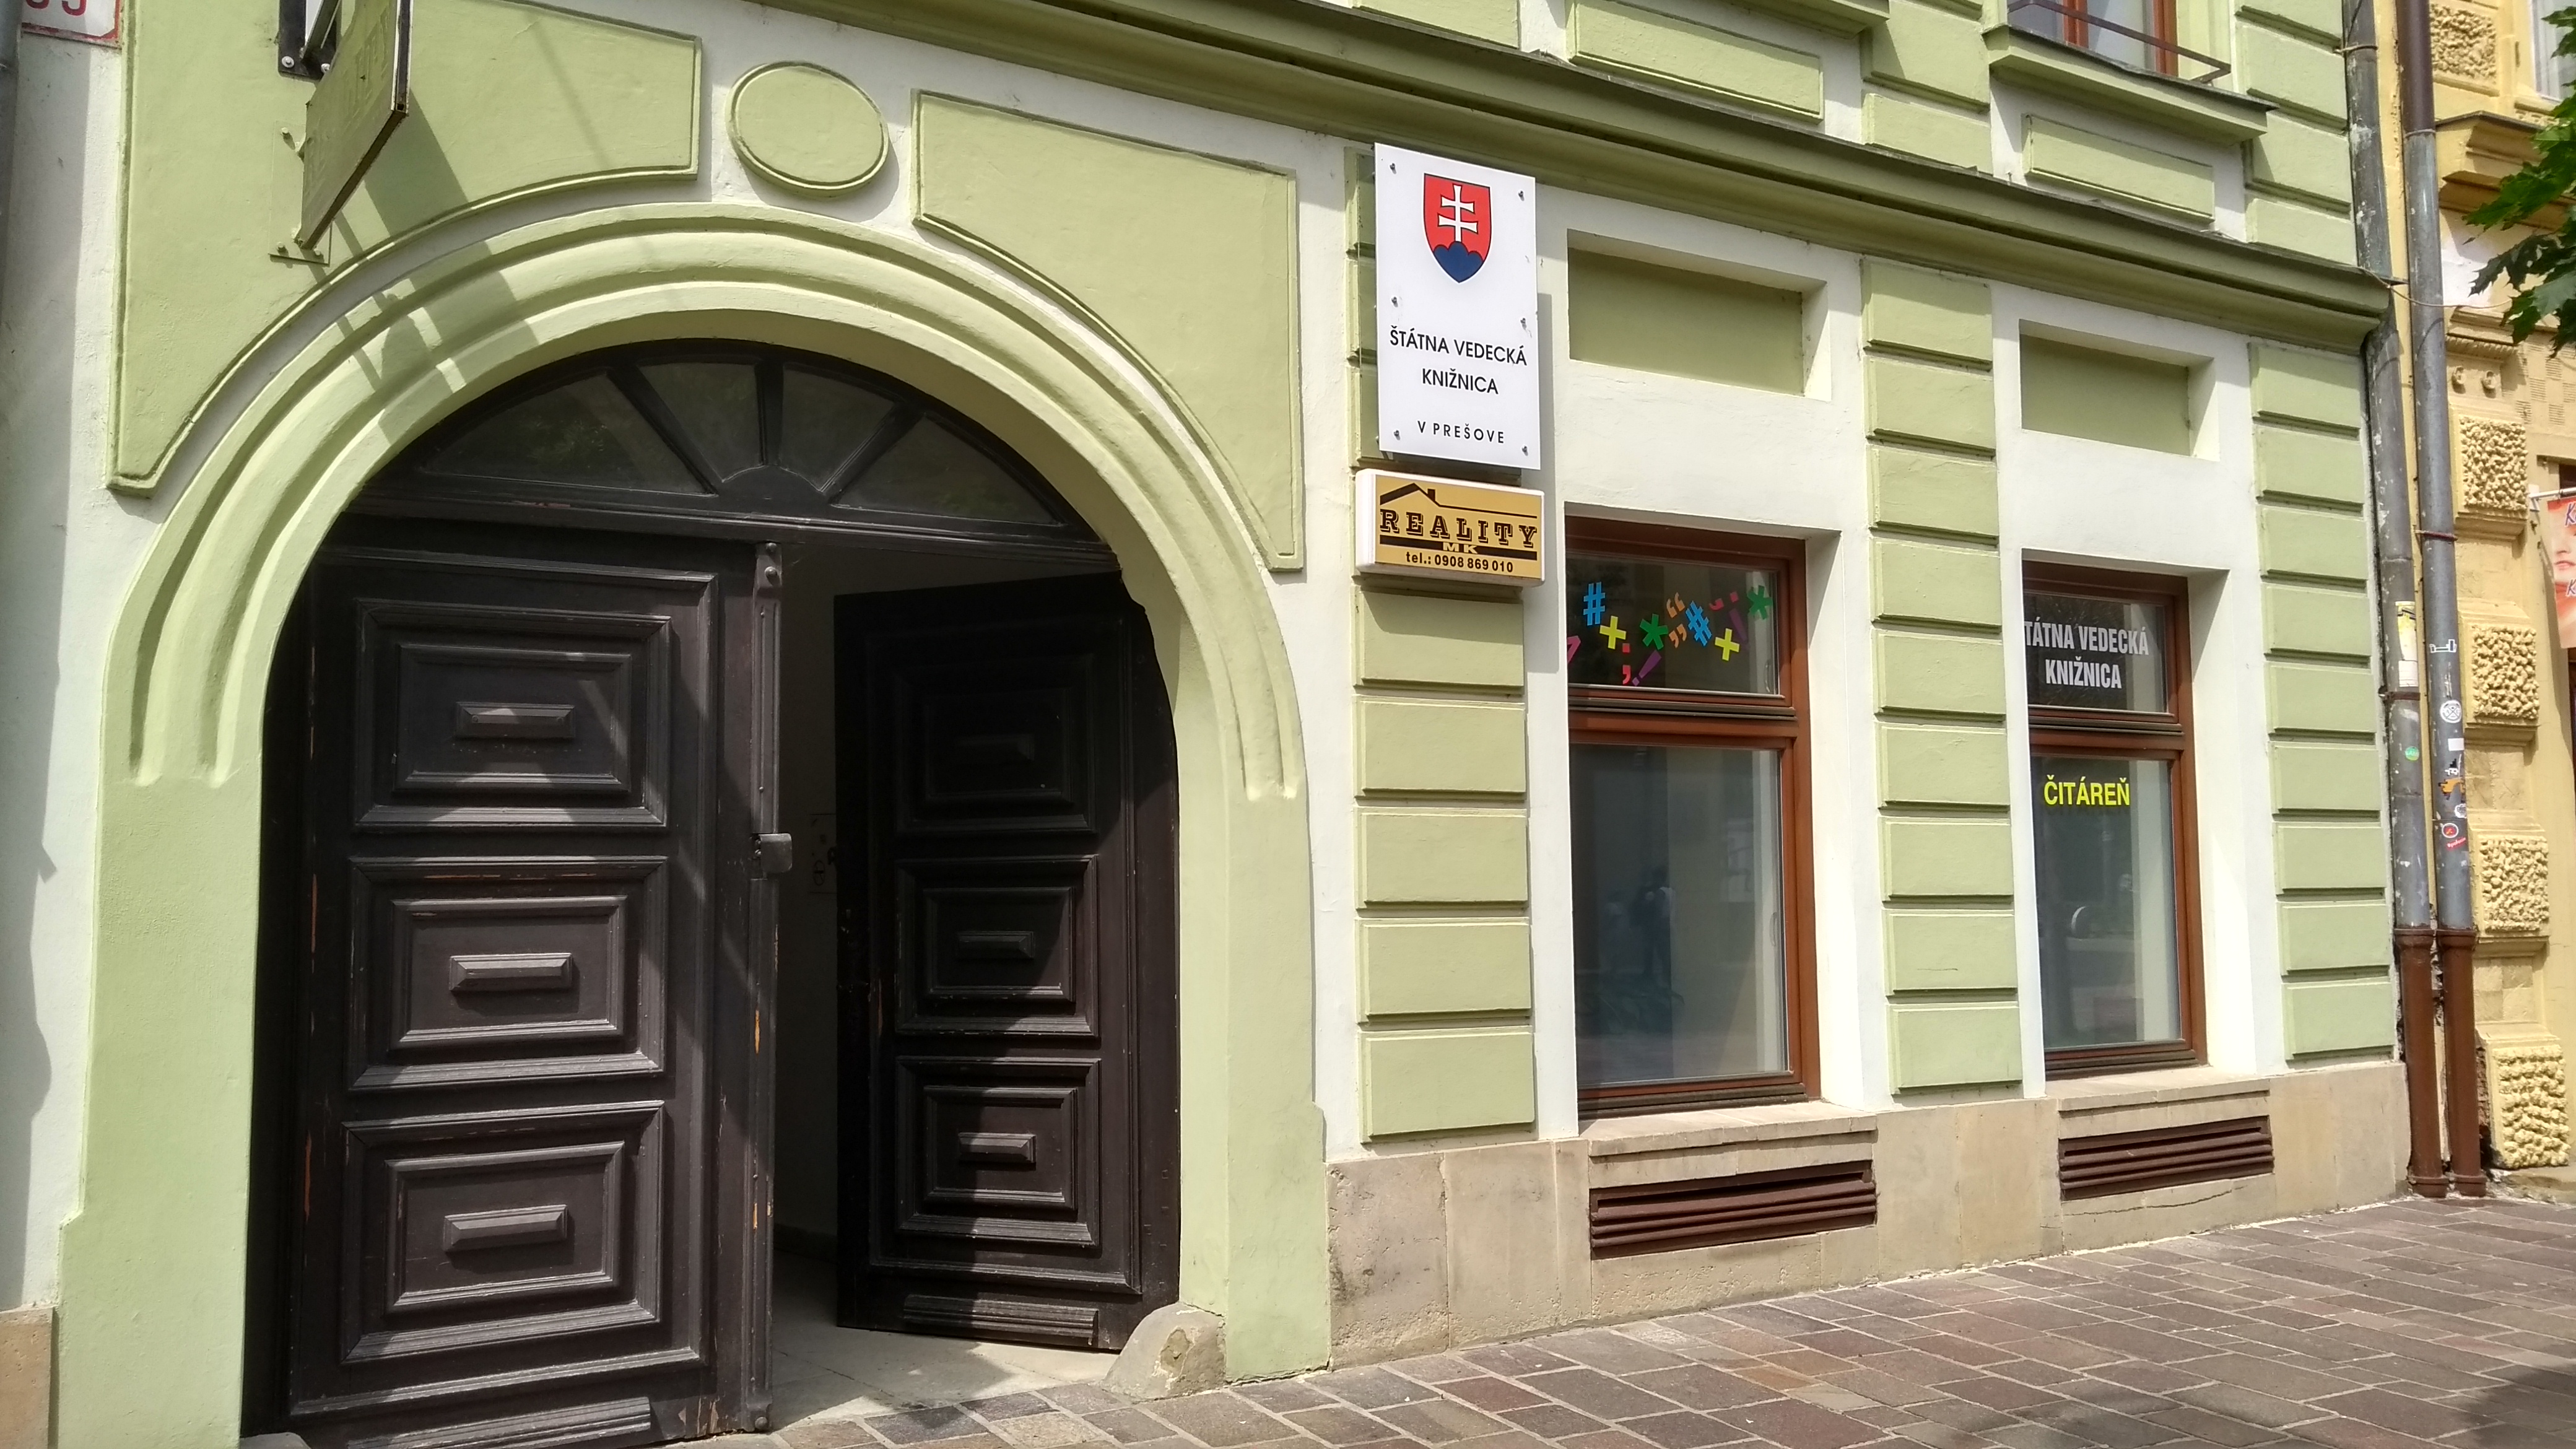 Štátna vedecká knižnica v Prešove (Window Gallery)